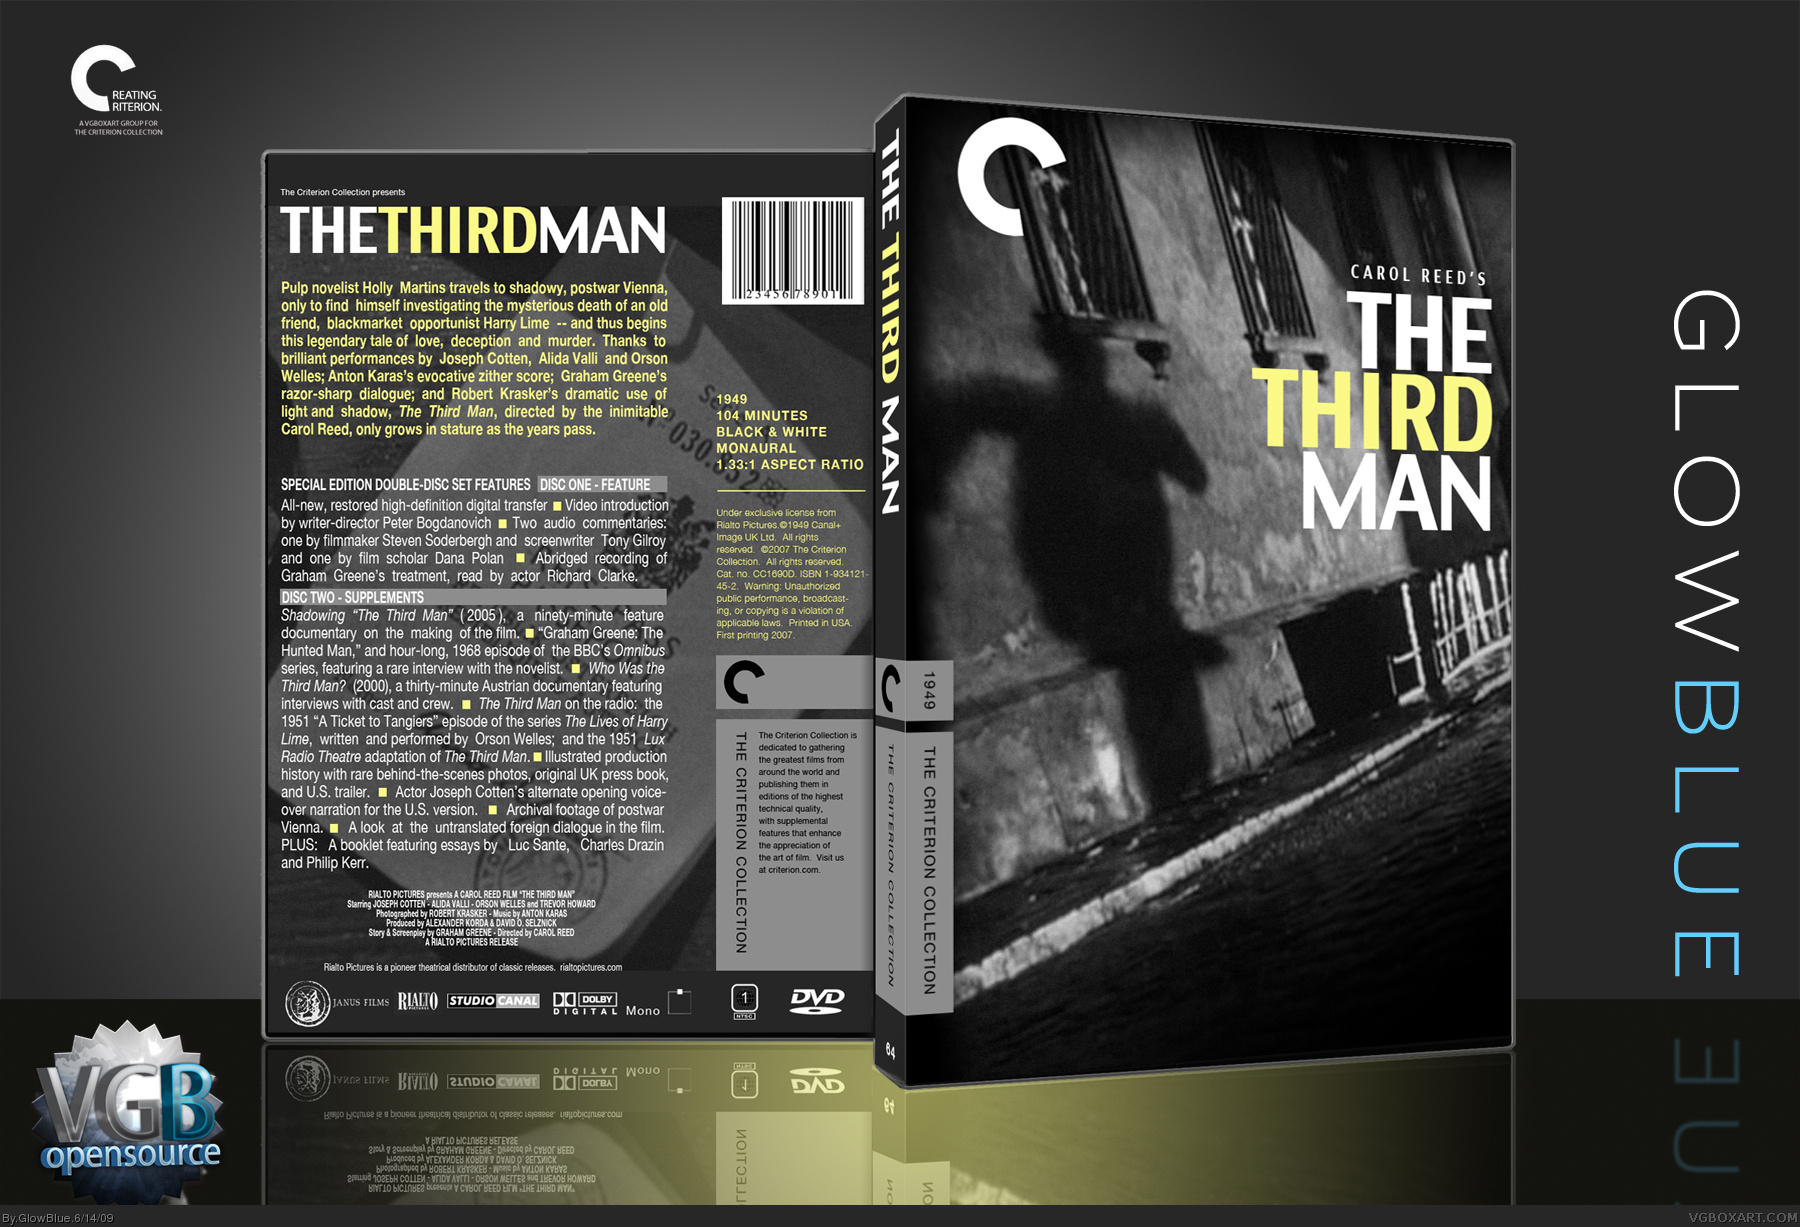 The Third Man box cover